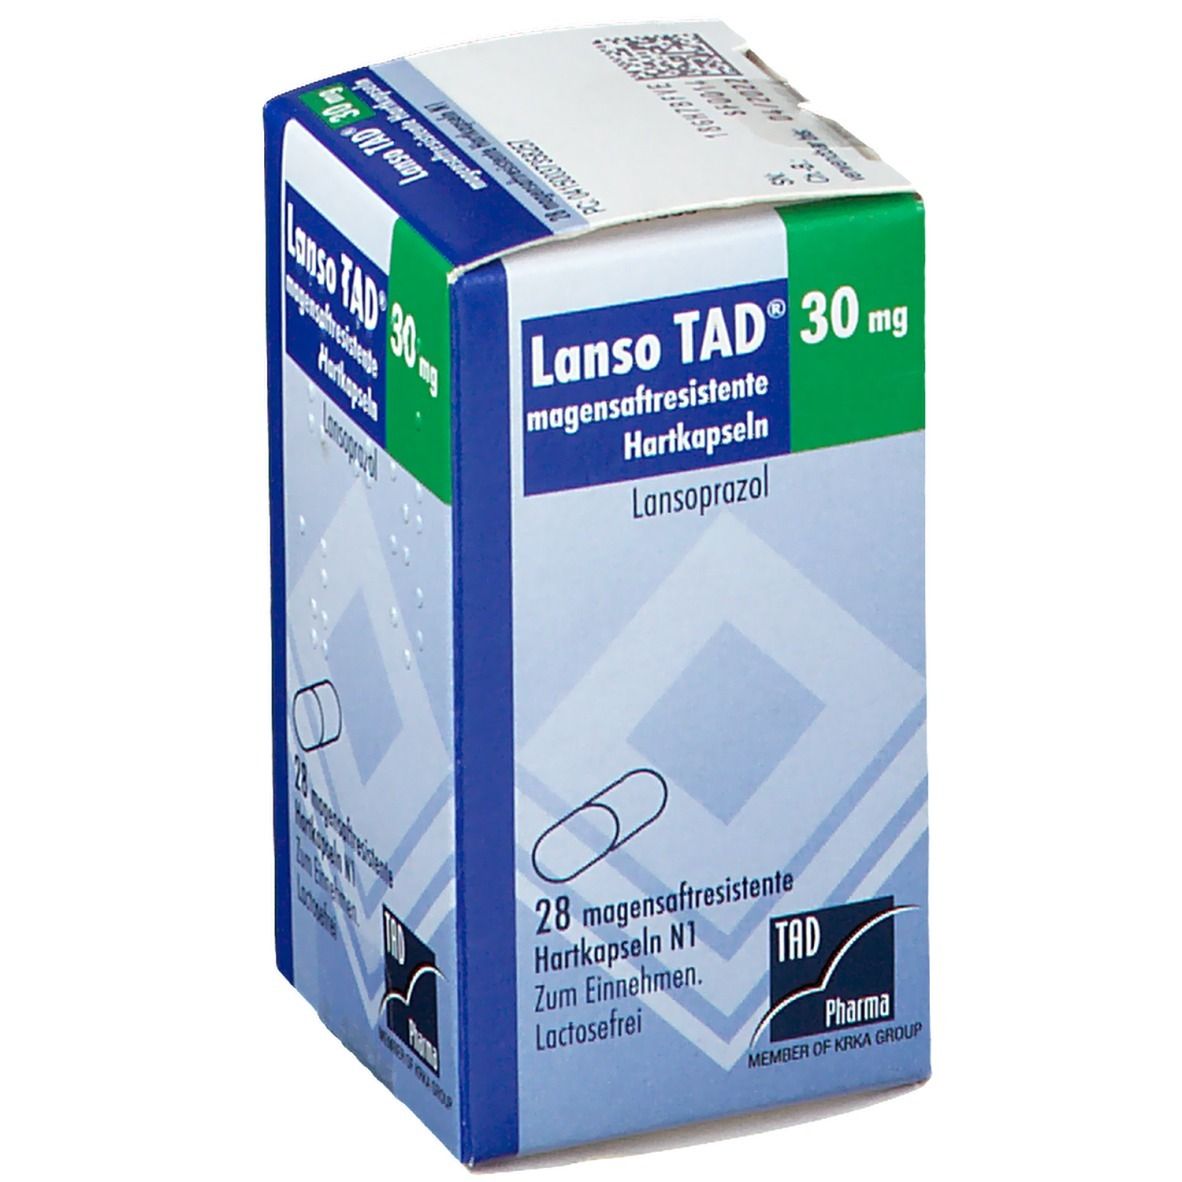 Lanso TAD® 30 mg